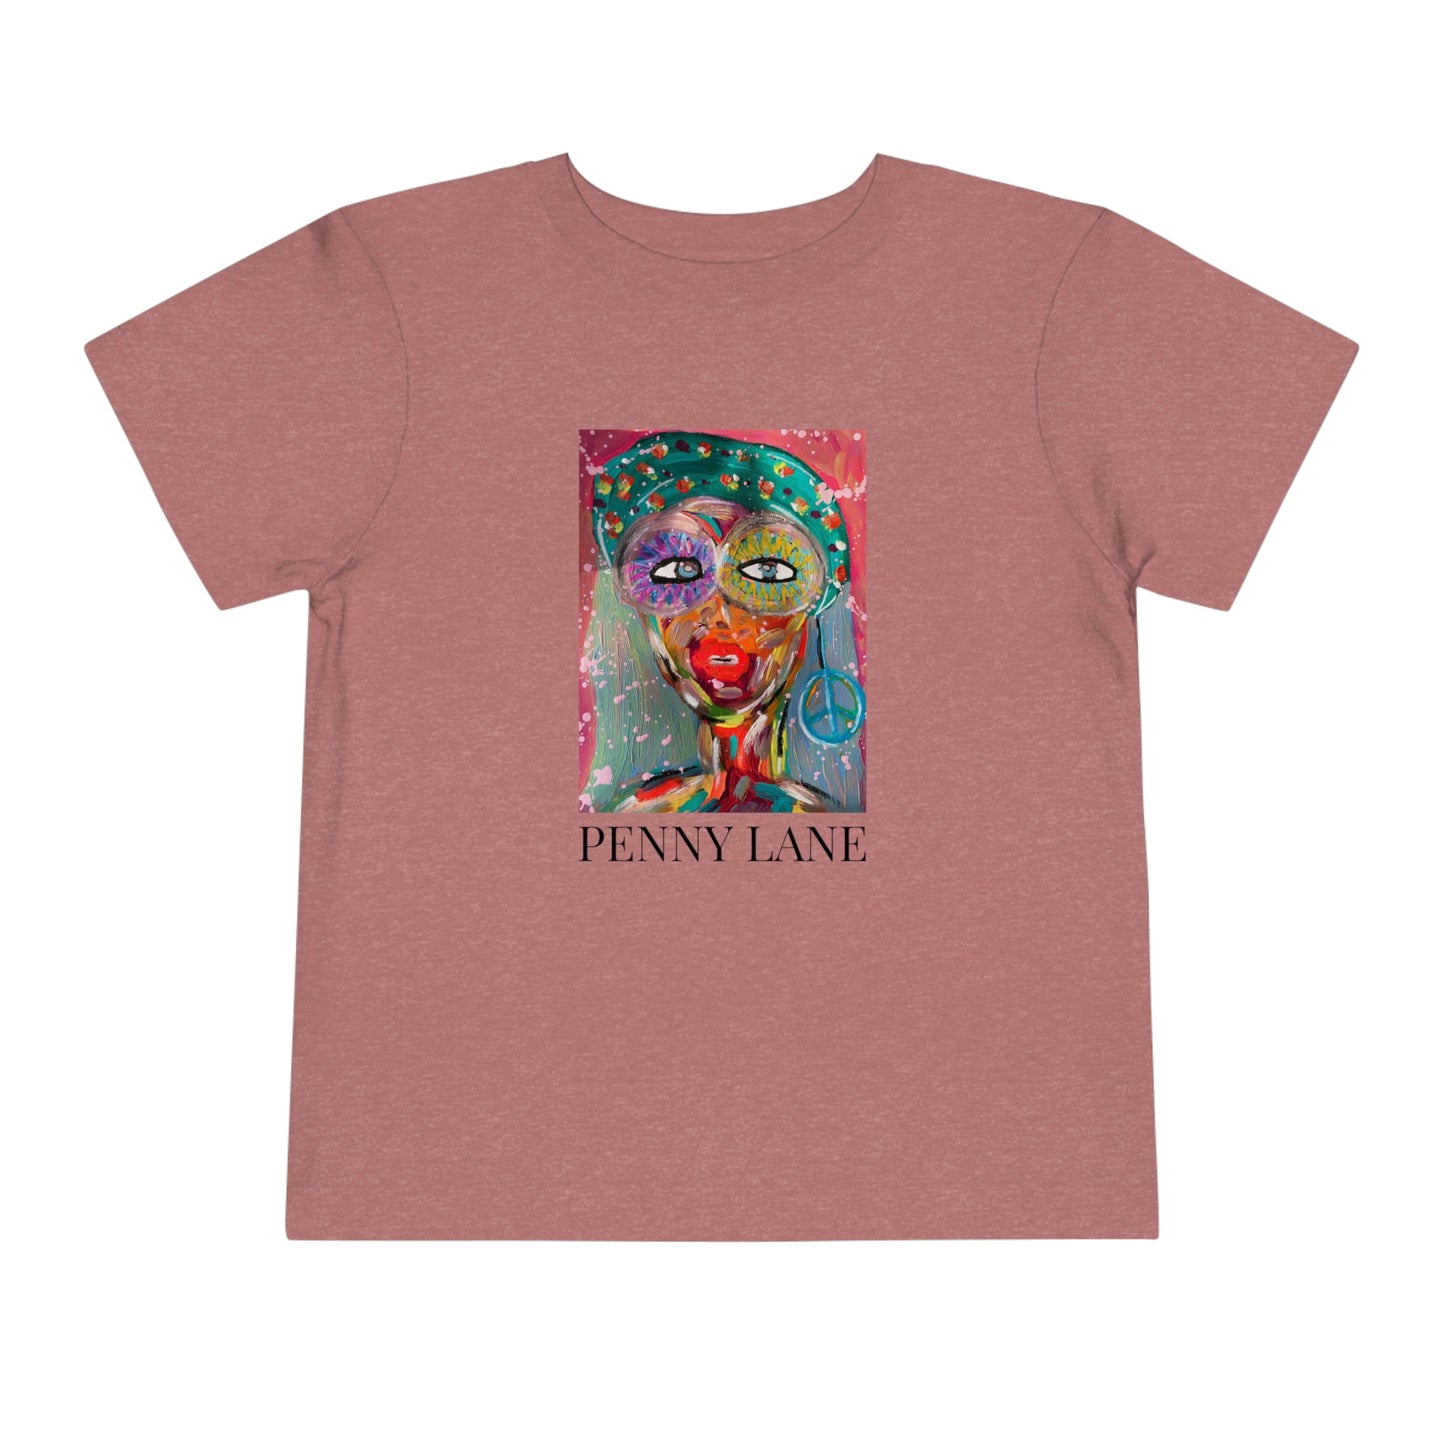 "Penny Lane" Girl Talk Art Toddler Short Sleeve Tee